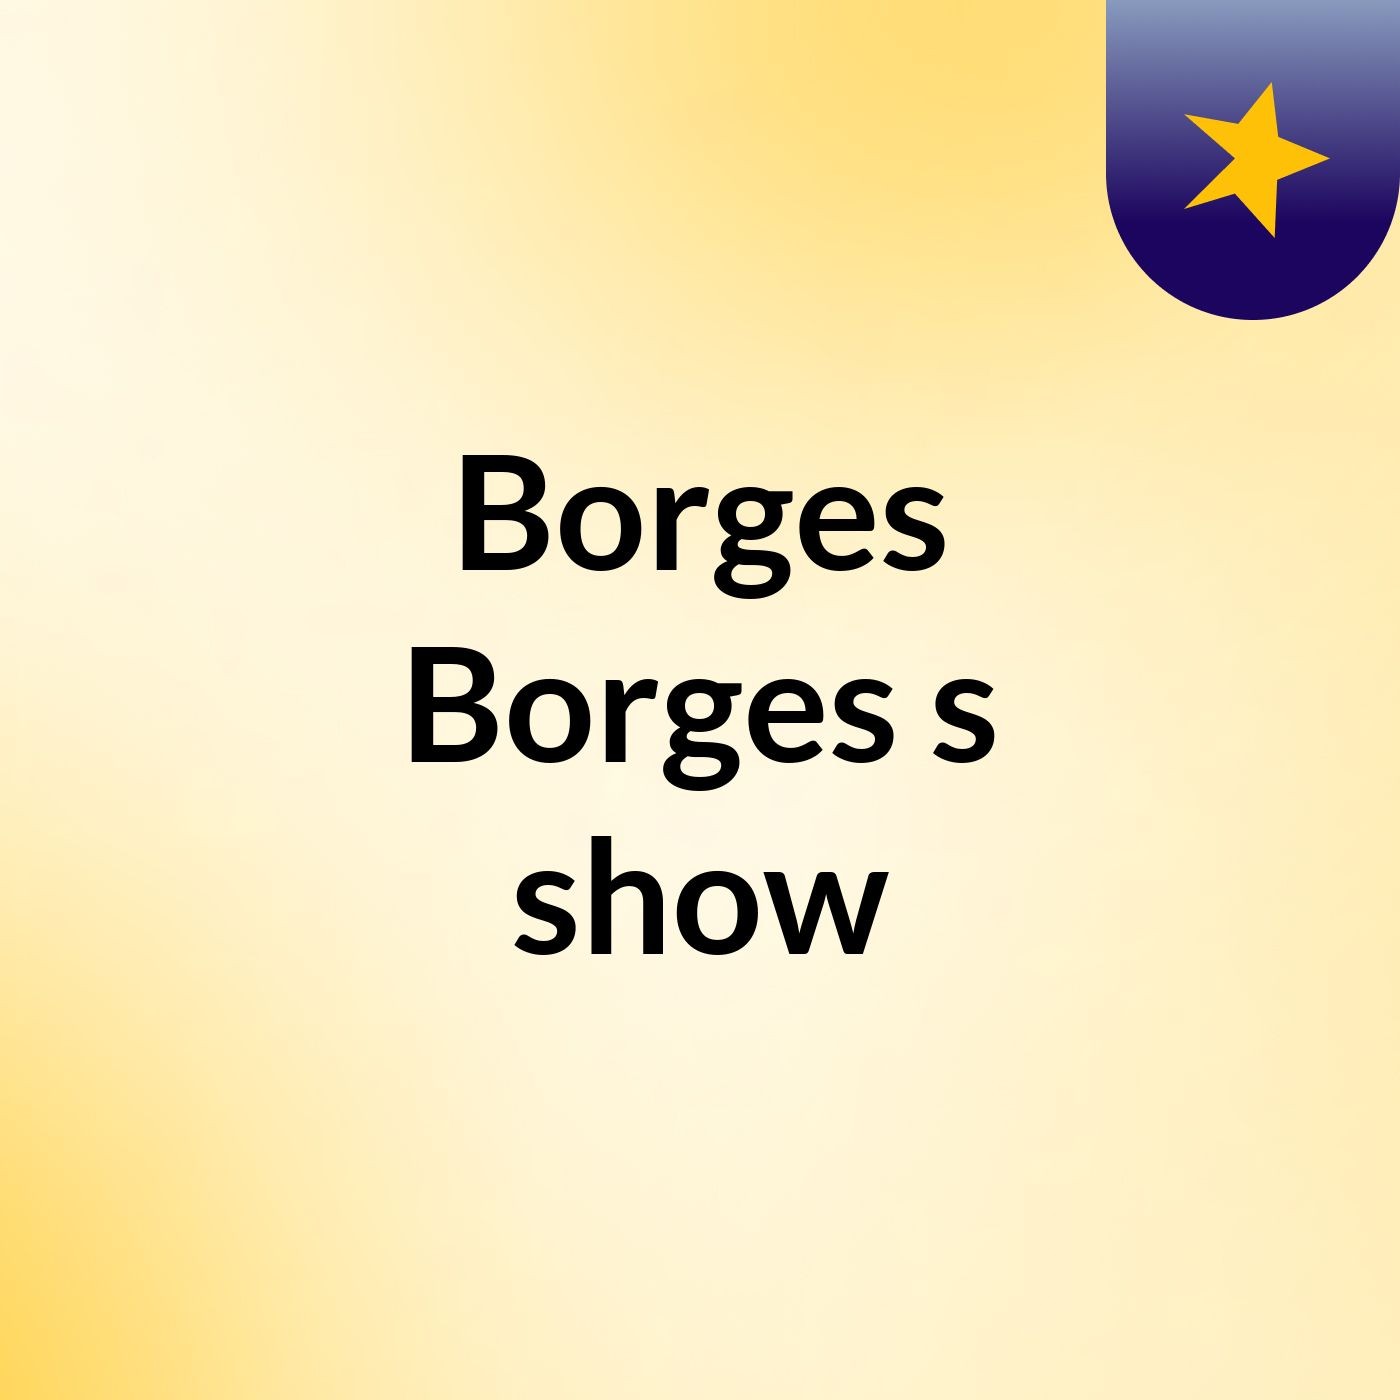 Borges Borges's show